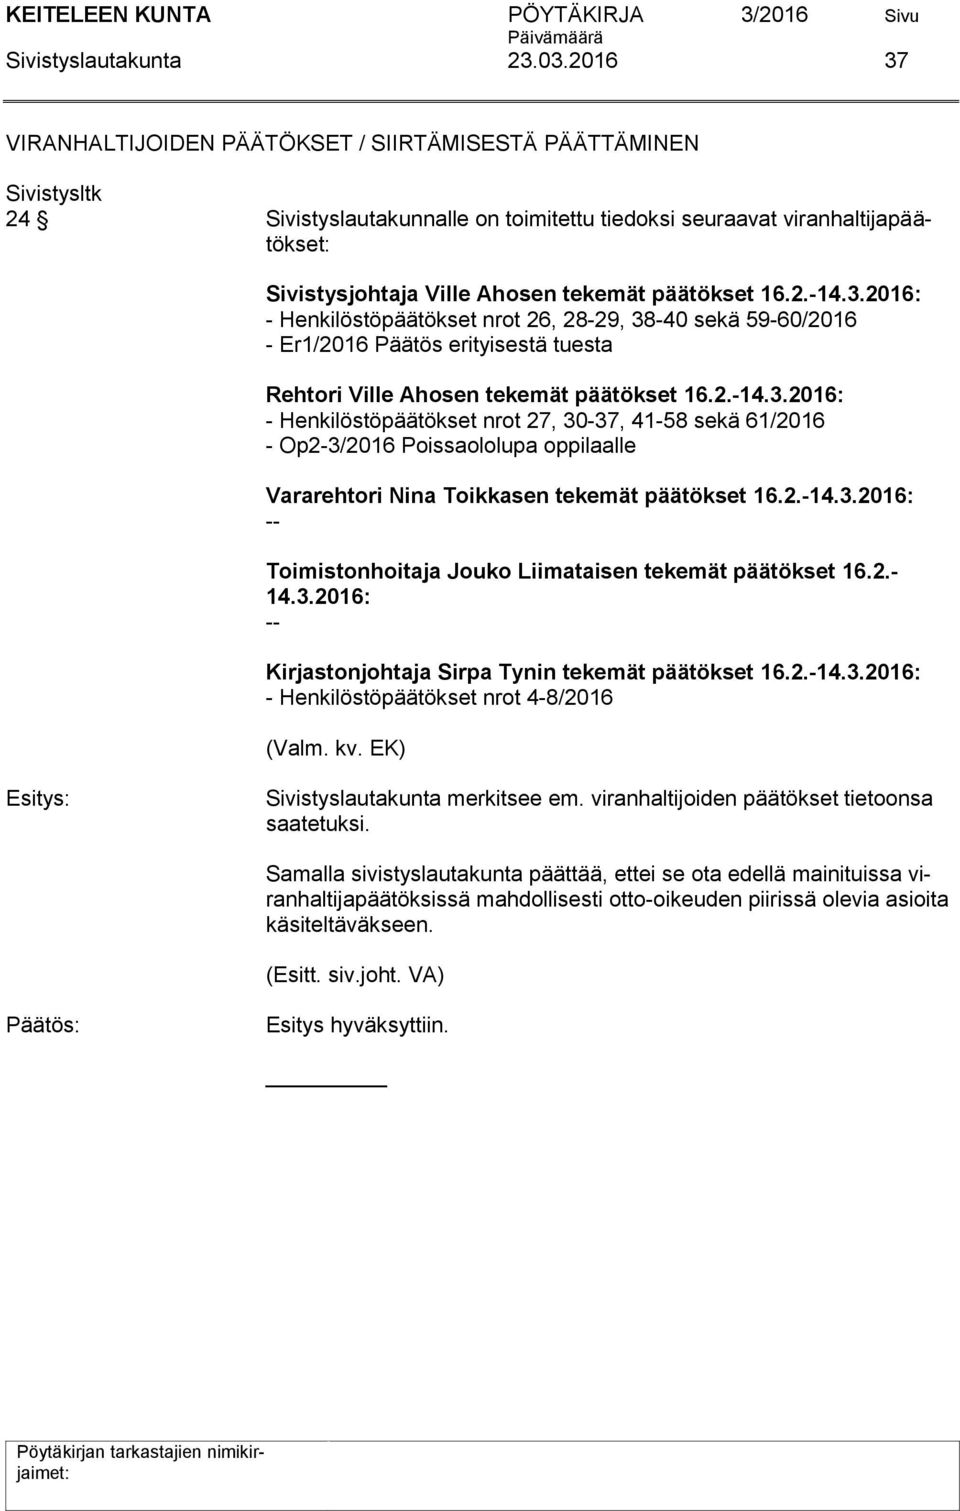 3.2016: - Henkilöstöpäätökset nrot 26, 28-29, 38-40 sekä 59-60/2016 - Er1/2016 Päätös erityisestä tuesta Rehtori Ville Ahosen tekemät päätökset 16.2.-14.3.2016: - Henkilöstöpäätökset nrot 27, 30-37, 41-58 sekä 61/2016 - Op2-3/2016 Poissaololupa oppilaalle Vararehtori Nina Toikkasen tekemät päätökset 16.